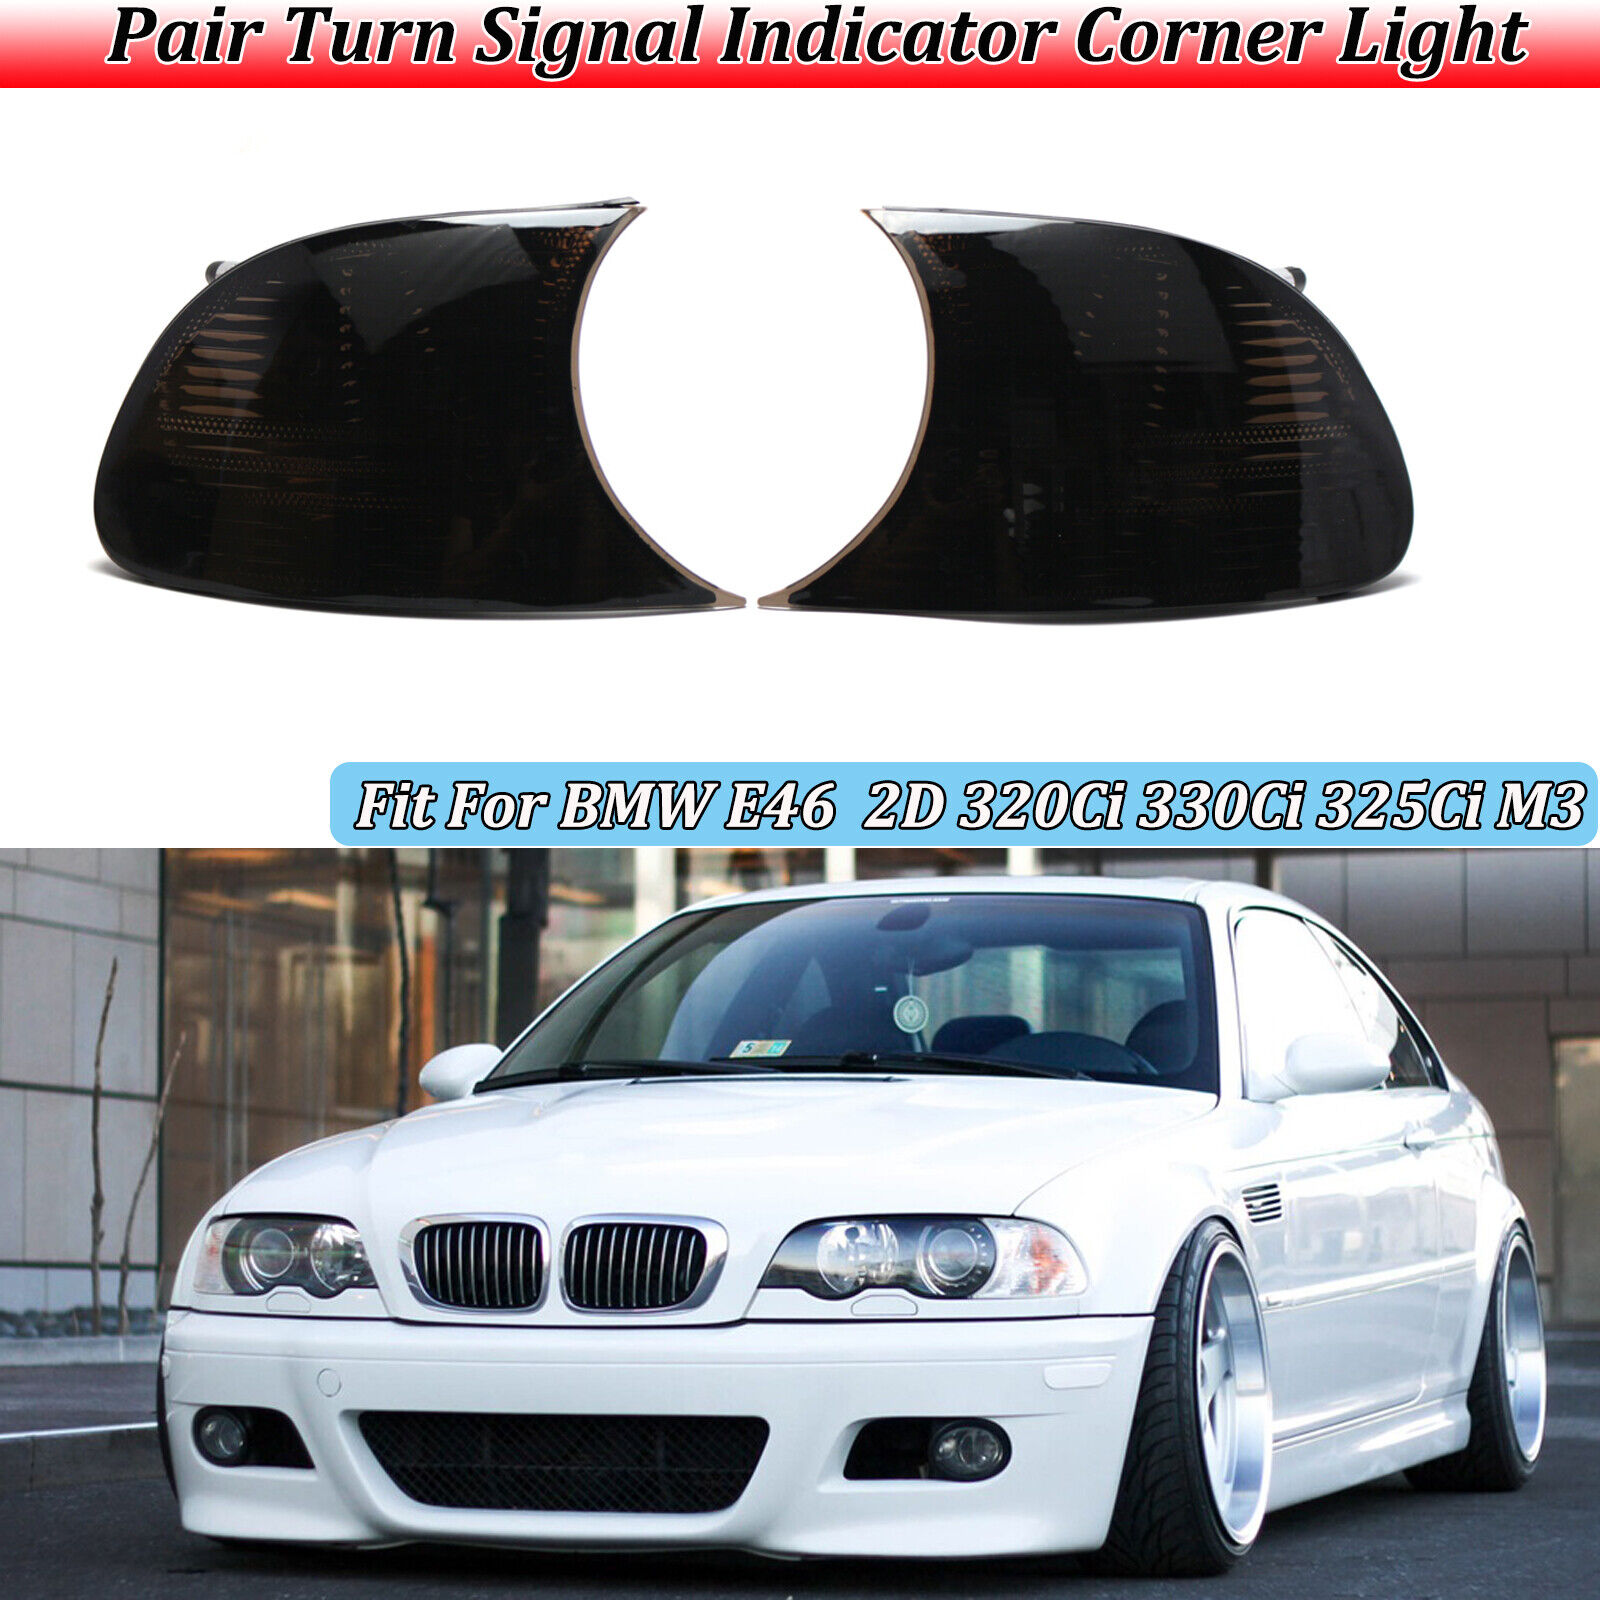 Turn Signal Corner Light Lamp For 98-01 BMW 325ci 330ci 328ci E46Coupe/Cabrio